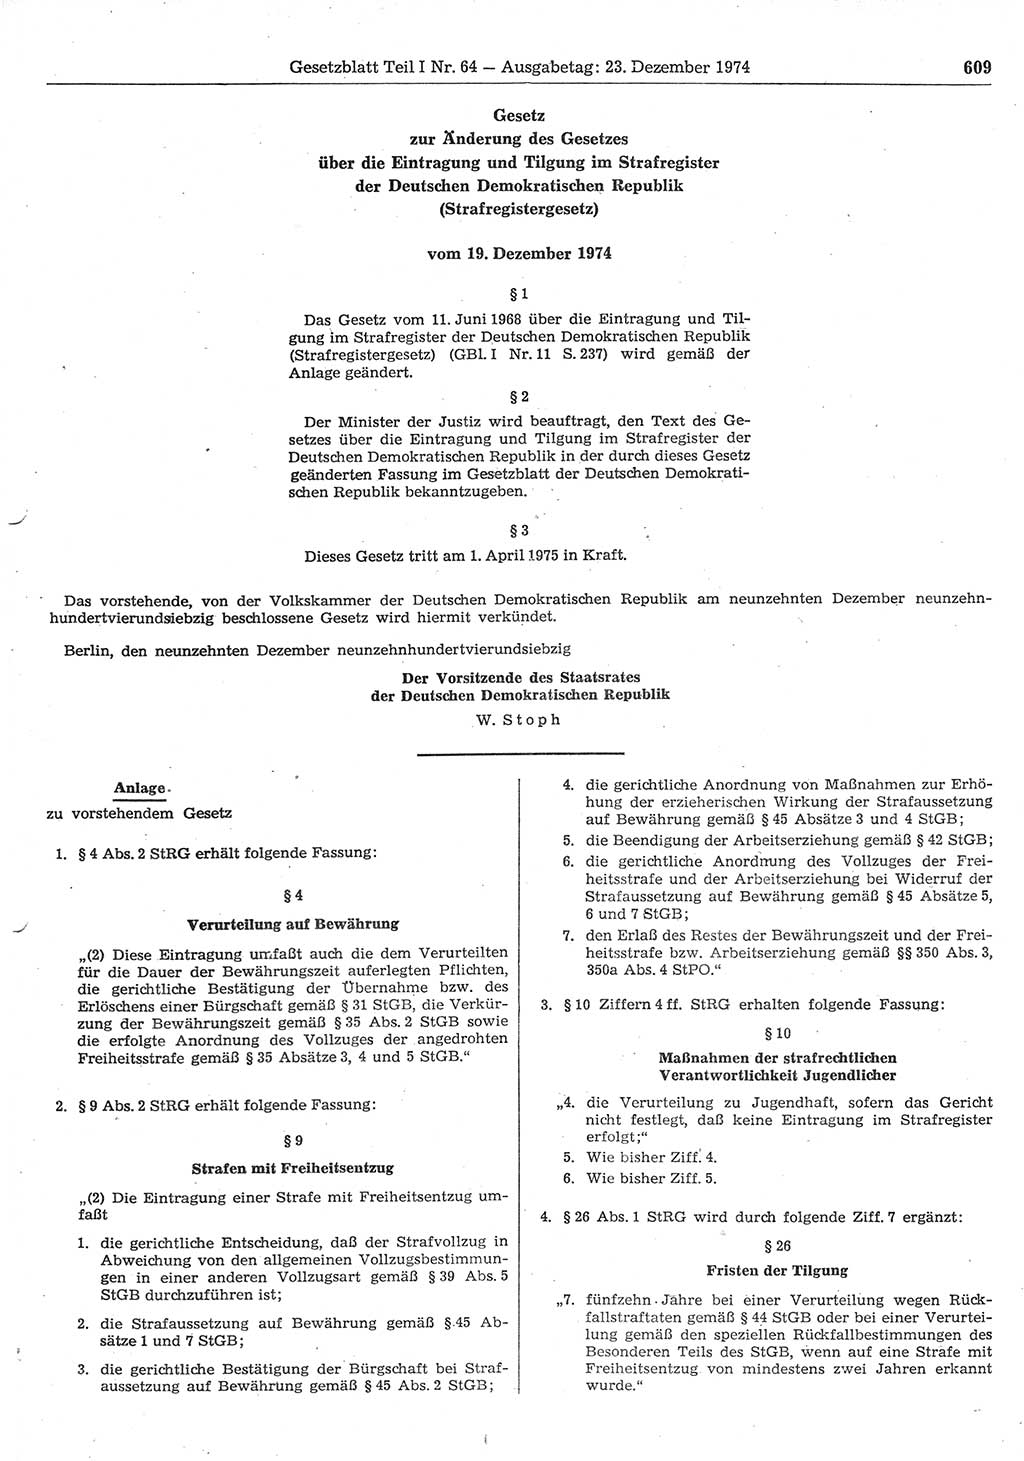 Gesetzblatt (GBl.) der Deutschen Demokratischen Republik (DDR) Teil Ⅰ 1974, Seite 609 (GBl. DDR Ⅰ 1974, S. 609)